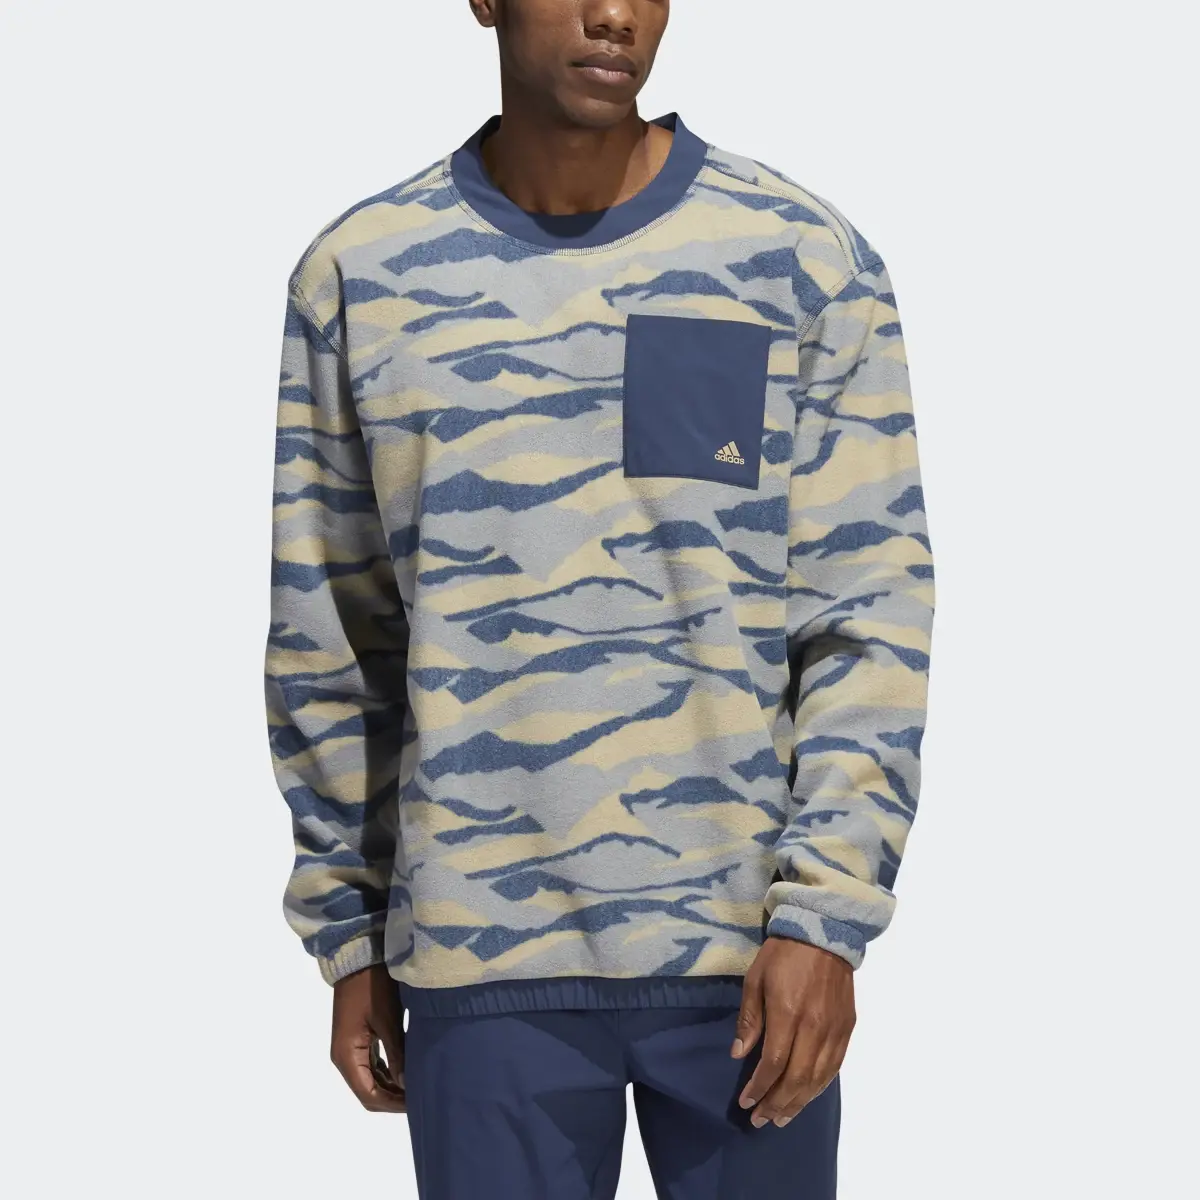 Adidas Sweatshirt. 1